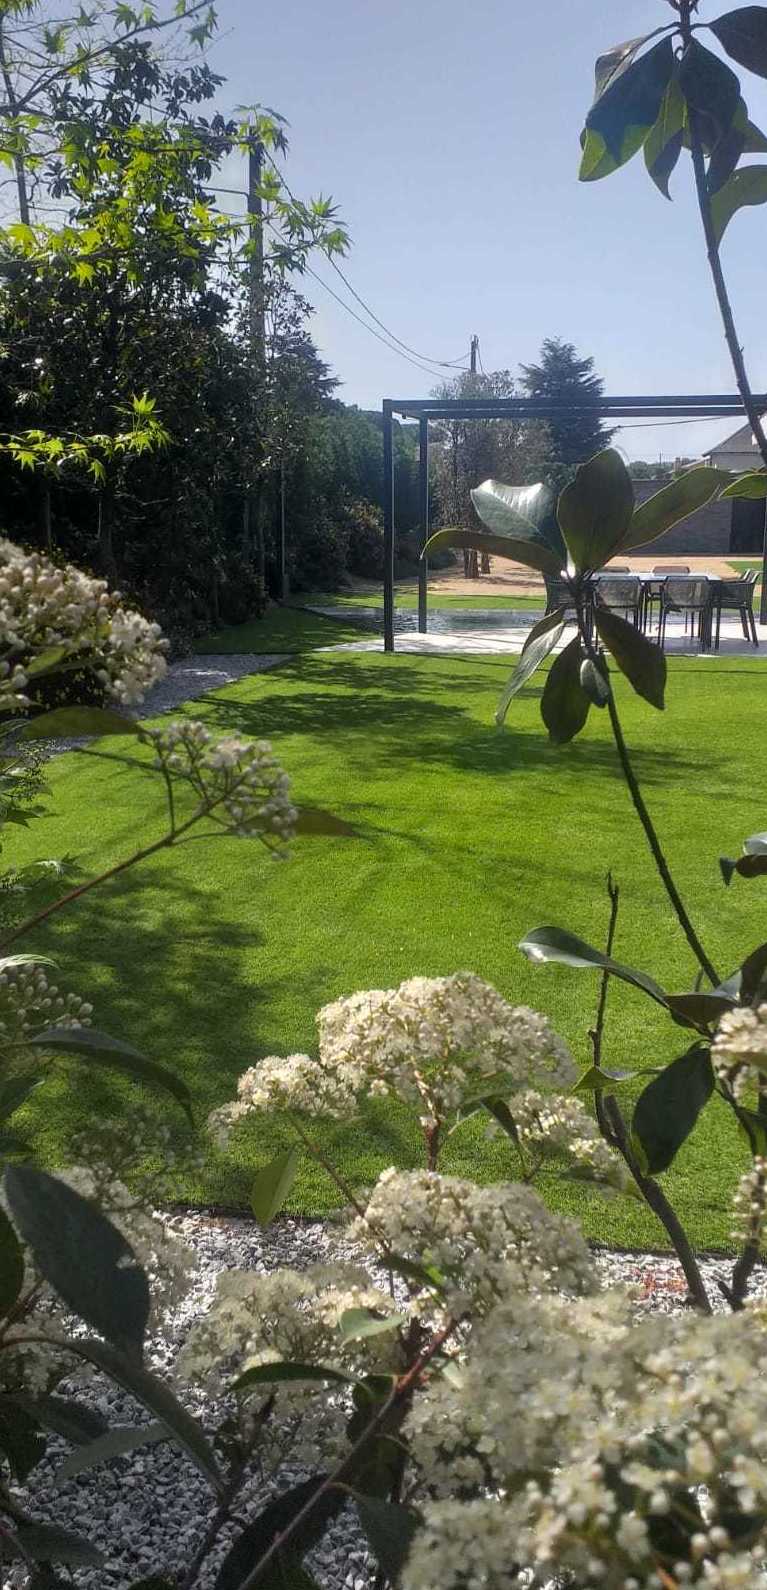 Foto 3 de Jardines (diseño y mantenimiento) en Sant Antoni De Vilamajor | Jardineria Costa